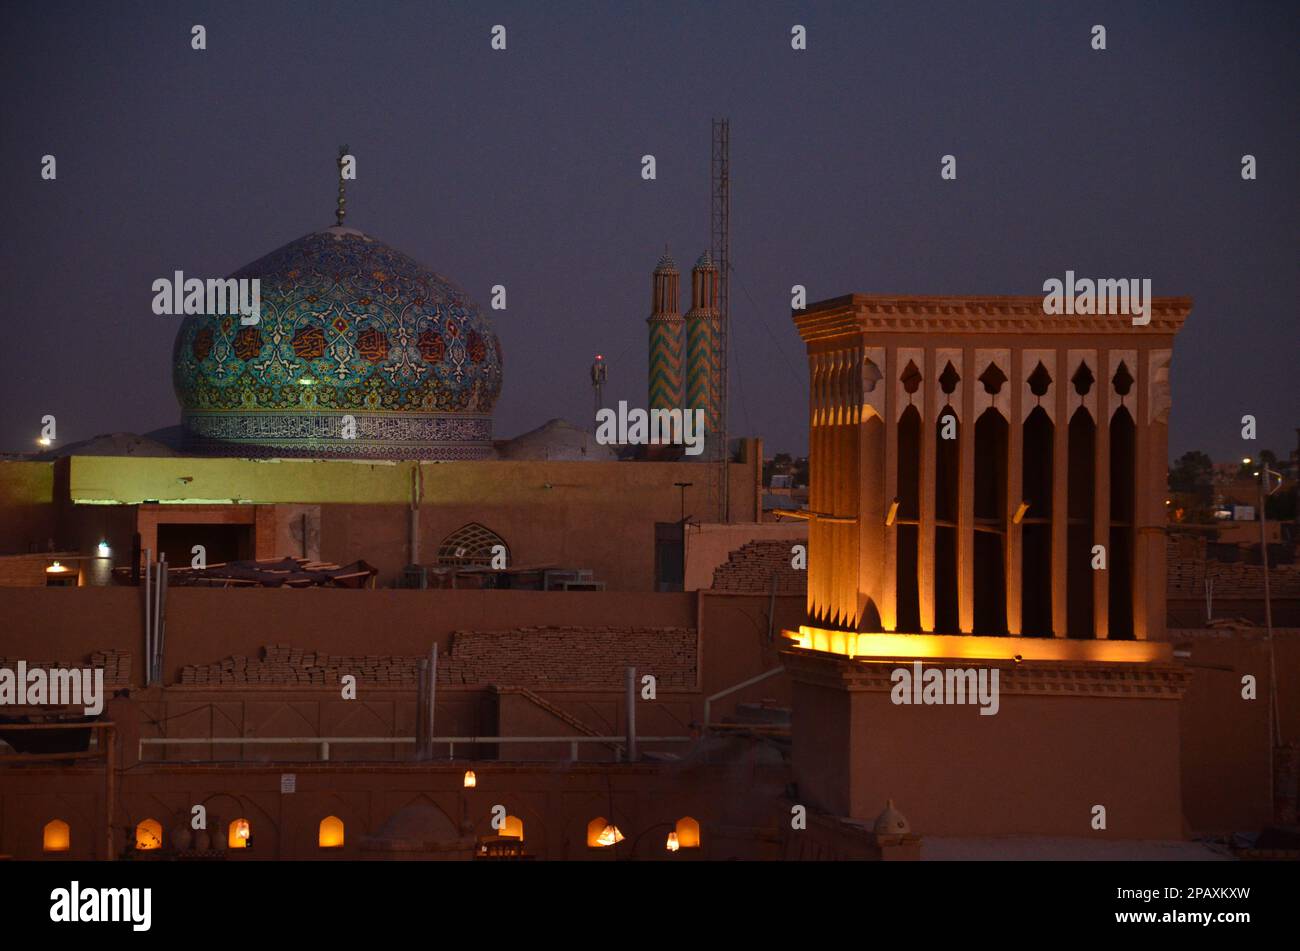 Beleuchteter Windturm und farbenfrohe Kuppel einer Moschee in Yazd, Iran im Abendlicht Stockfoto